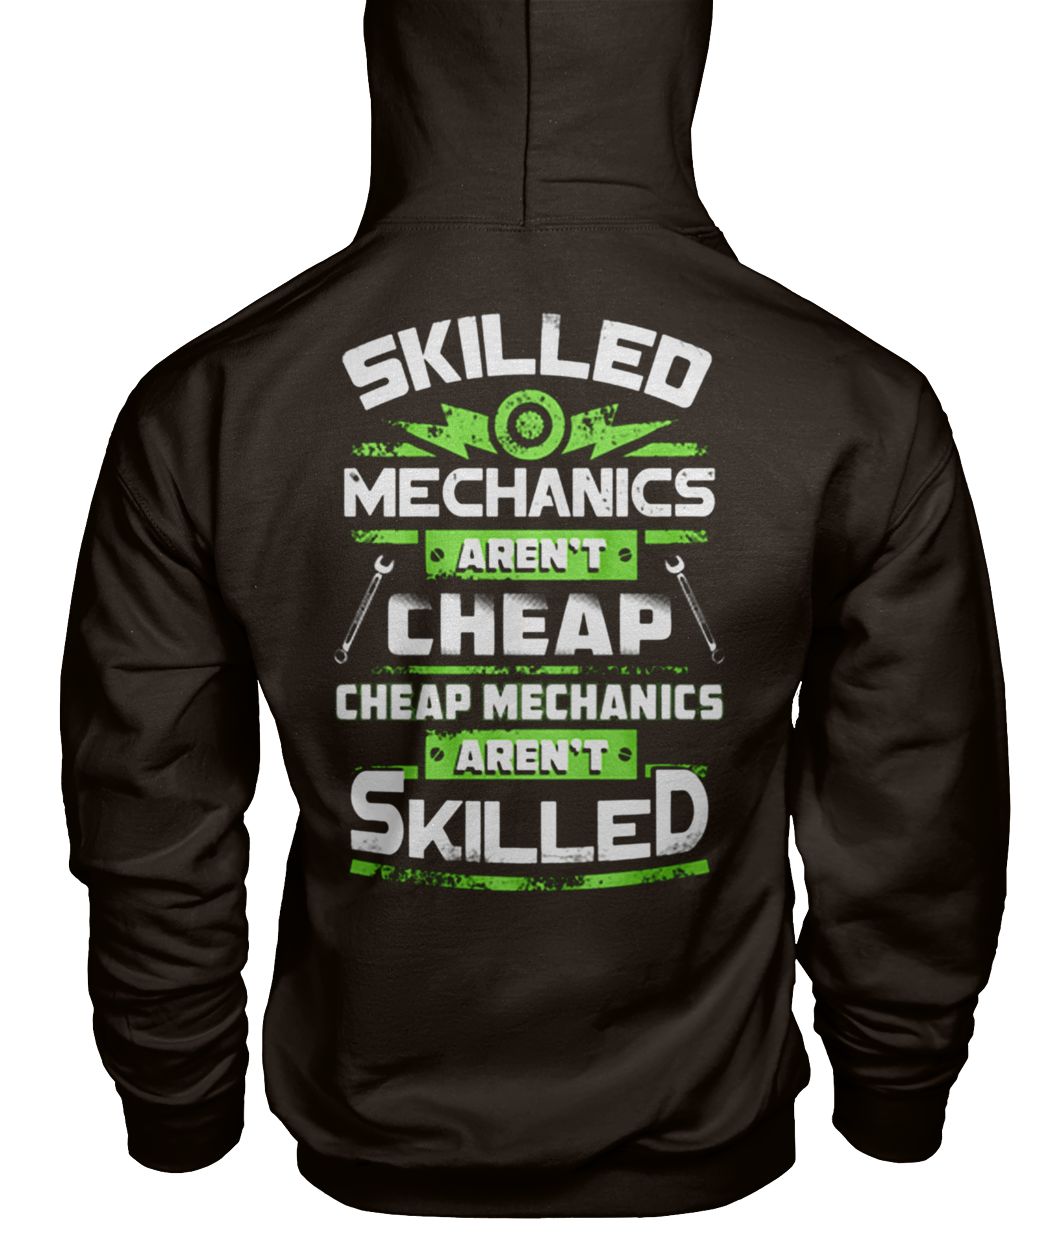 Skilled mechanics aren't cheap cheap mechanics aren't skilled gildan hoodie